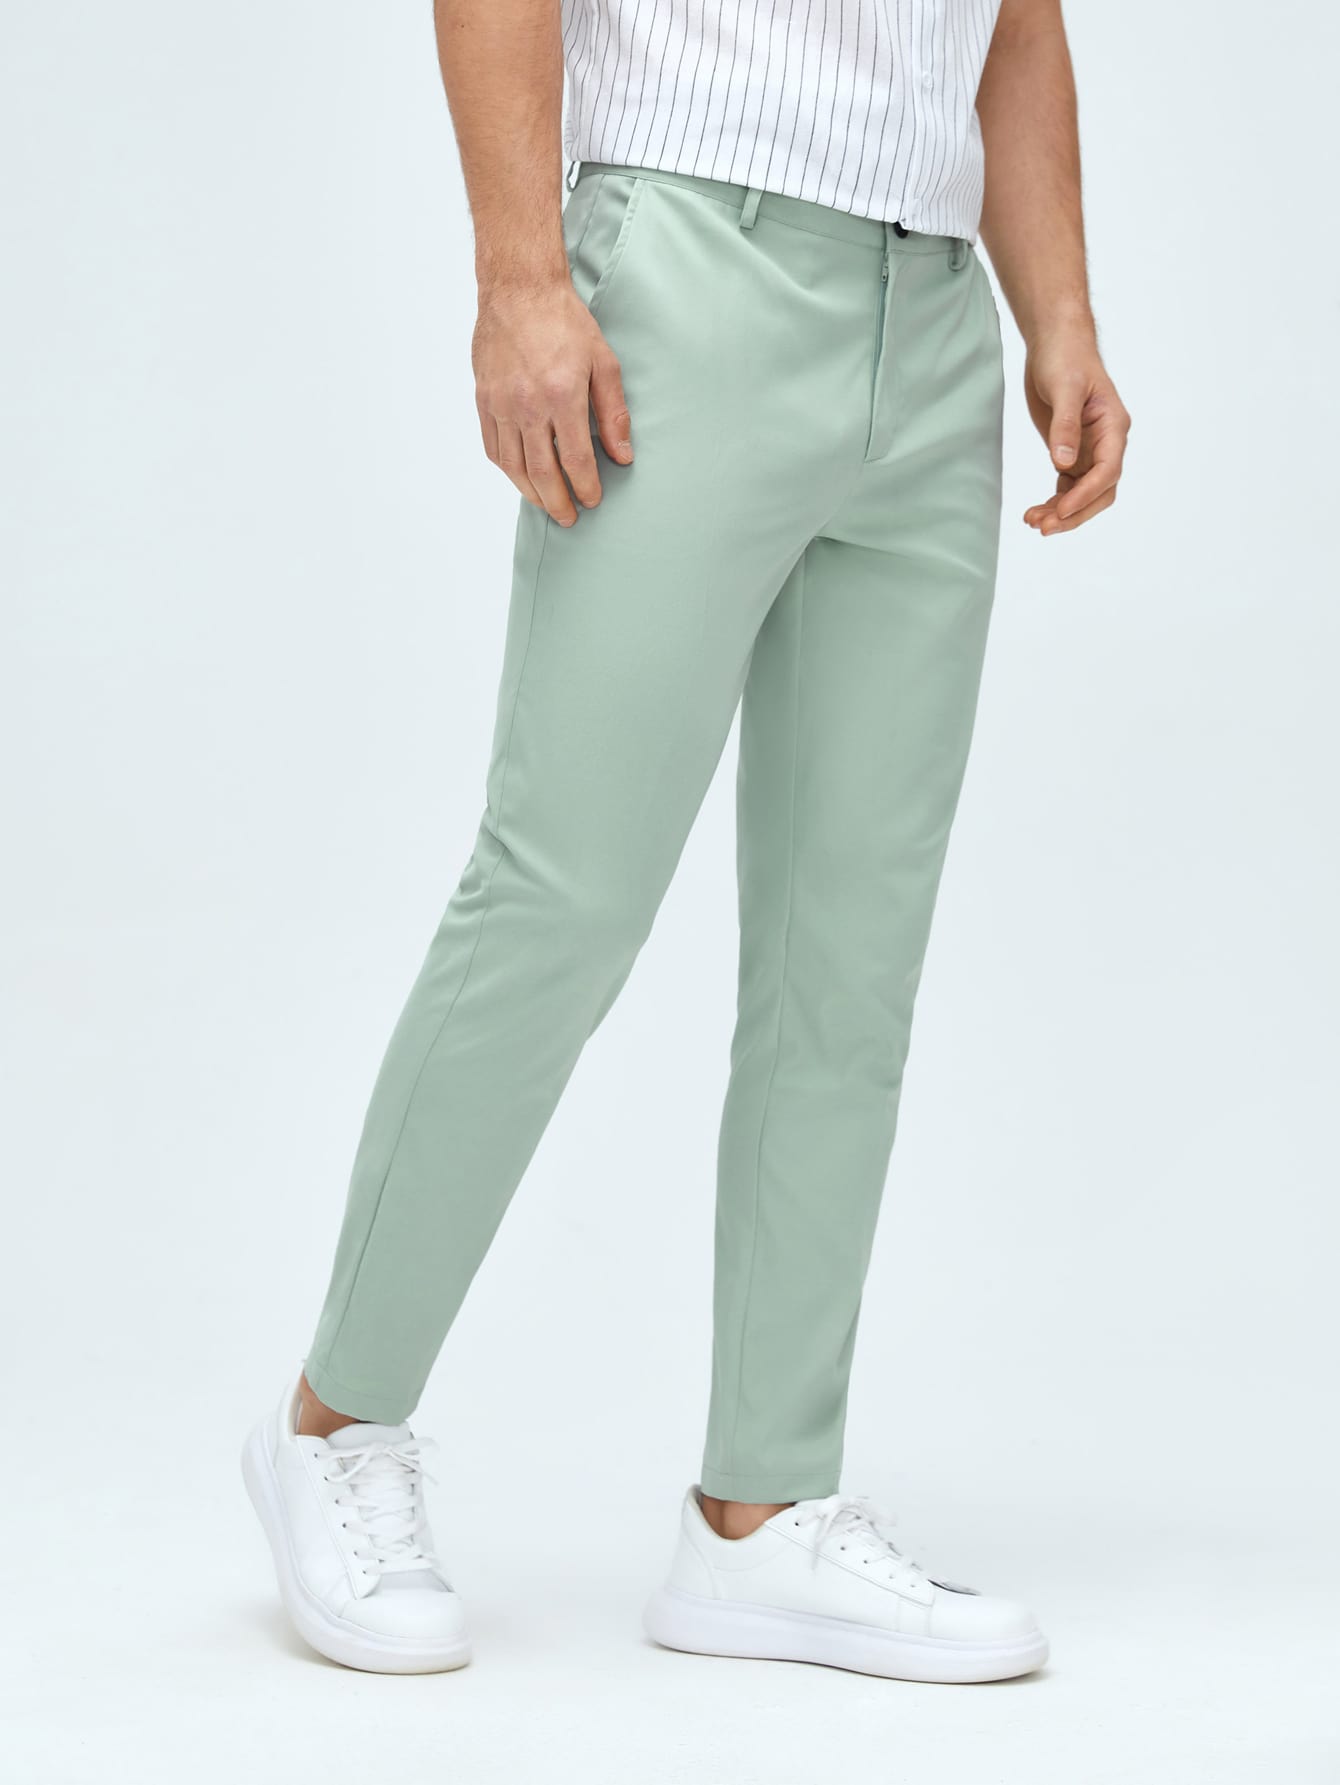 Мужские классические классические брюки из тканого материала с боковыми карманами Manfinity Mode, мятно-зеленый